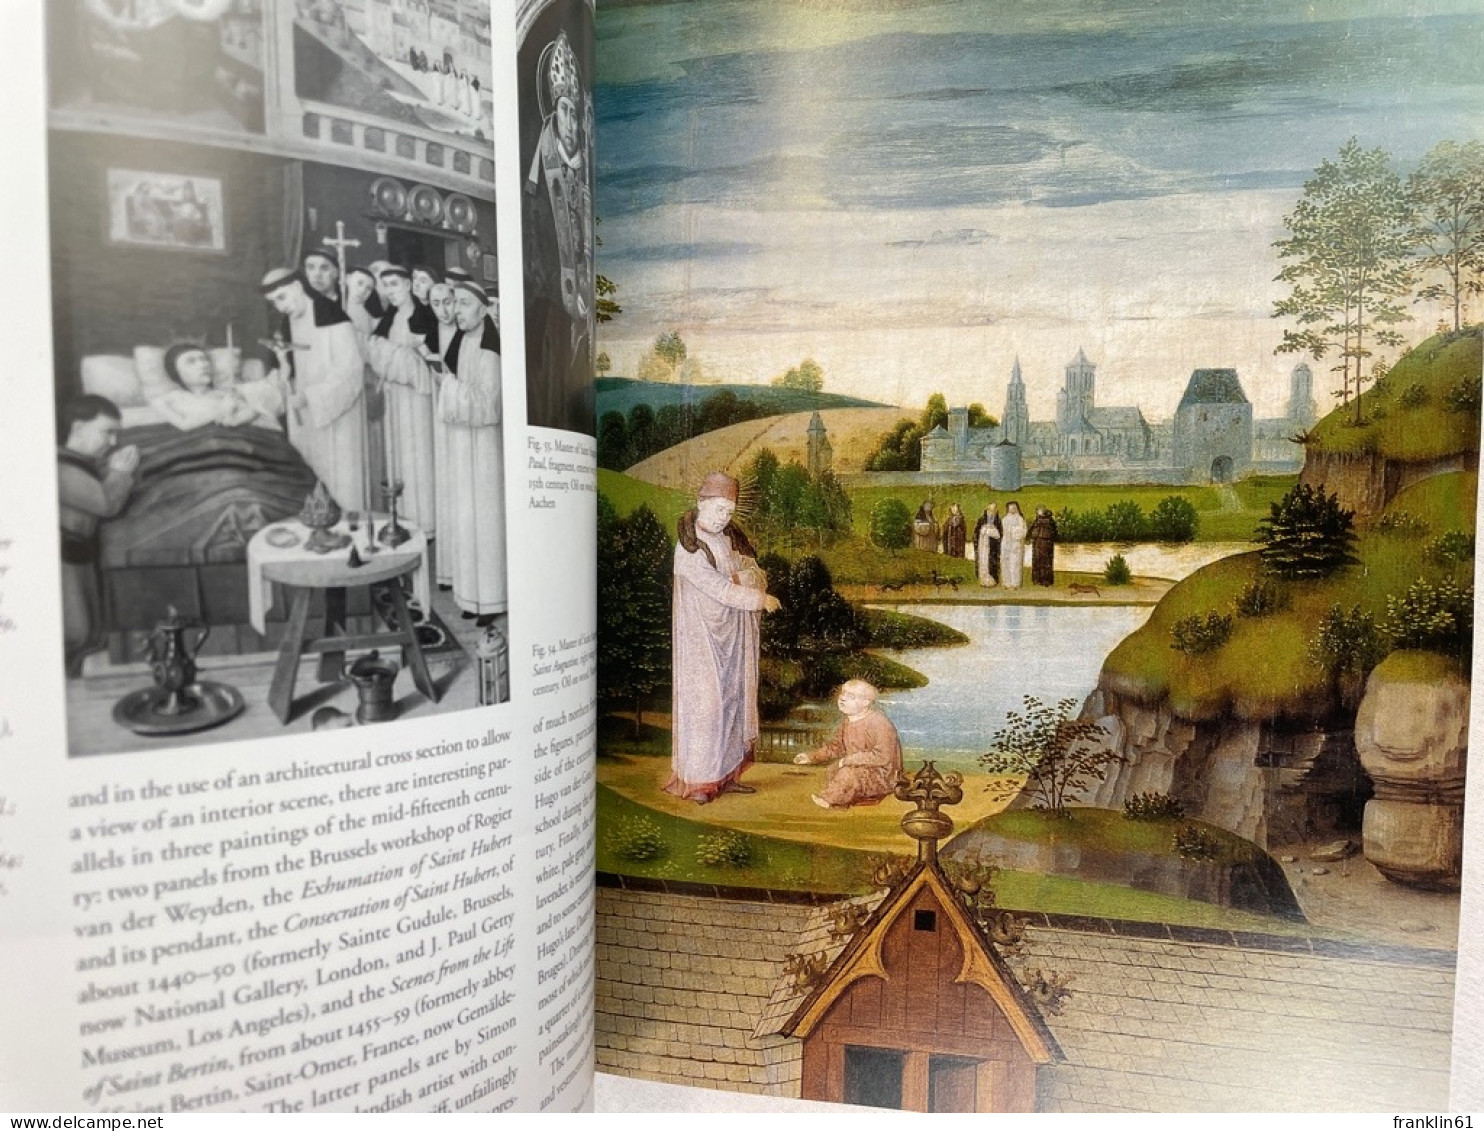 From Van Eyck to Bruegel: Early Netherlandish Paintings in the Metropolitan Museum of Art.